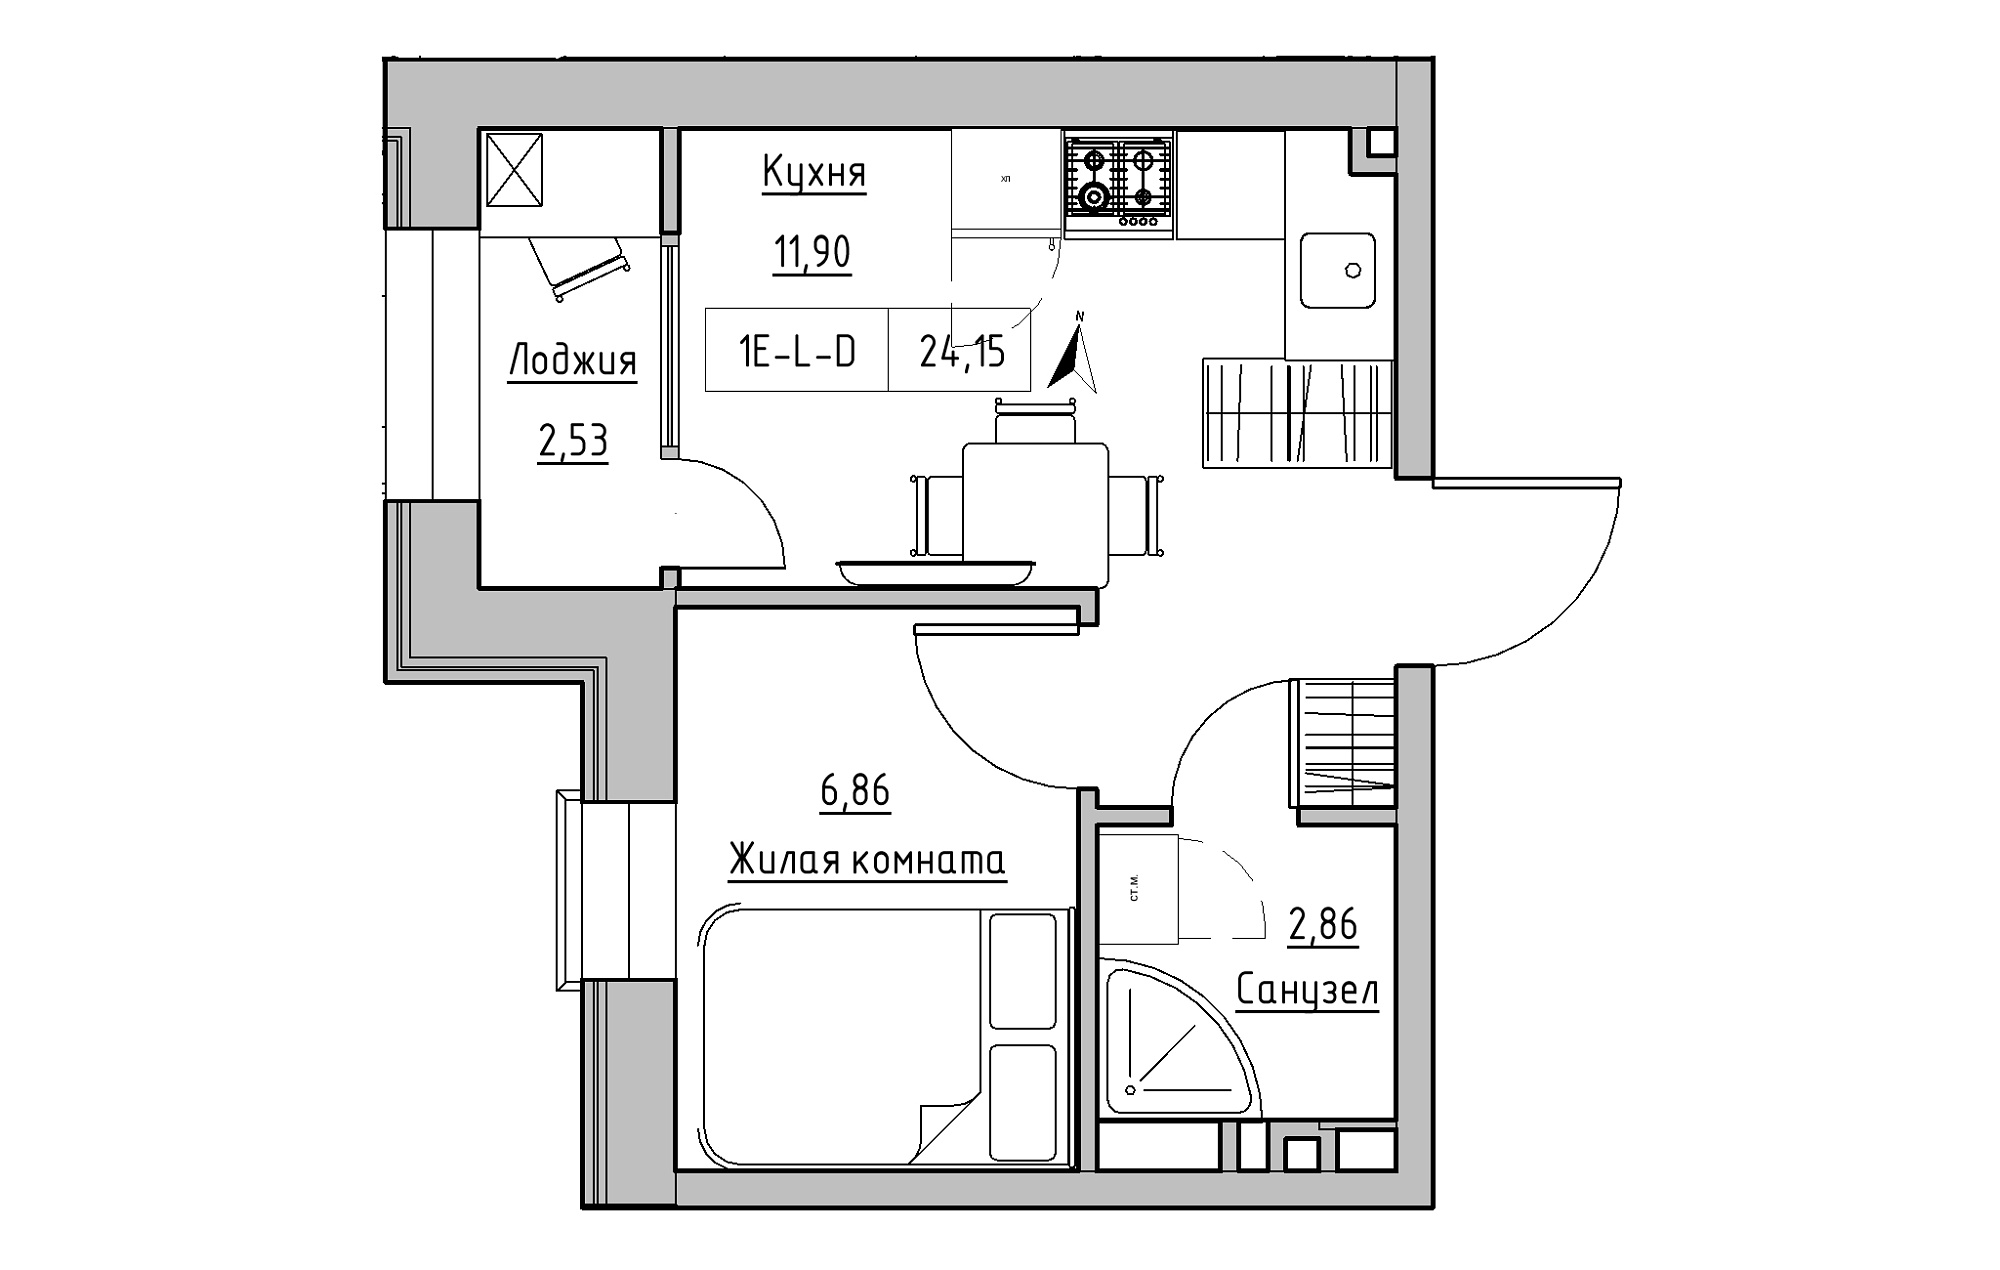 Планировка 1-к квартира площей 24.15м2, KS-019-01/0001.